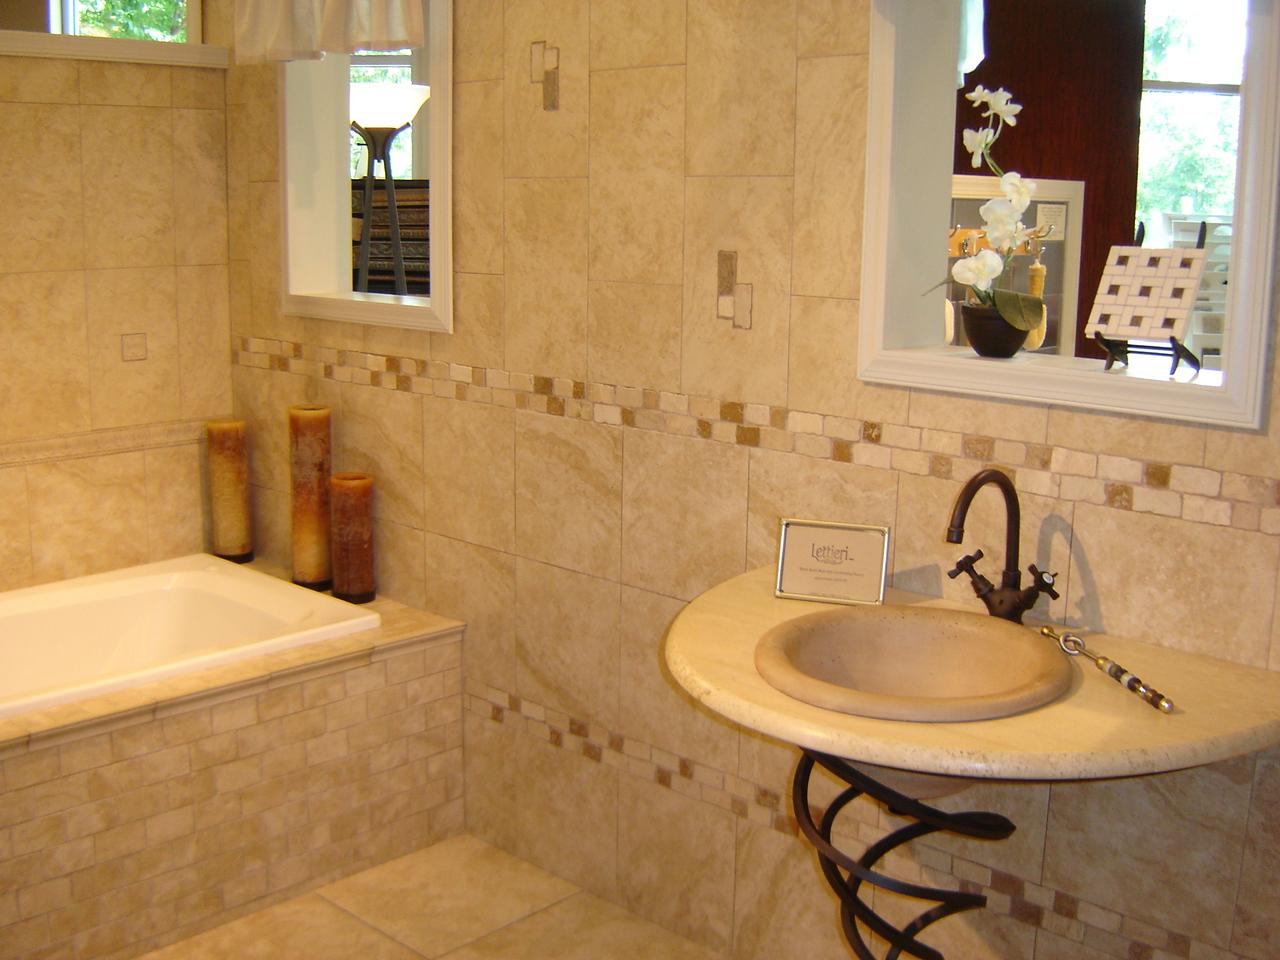 Excellent Bathroom Tile Designs 1280 x 960 · 120 kB · jpeg